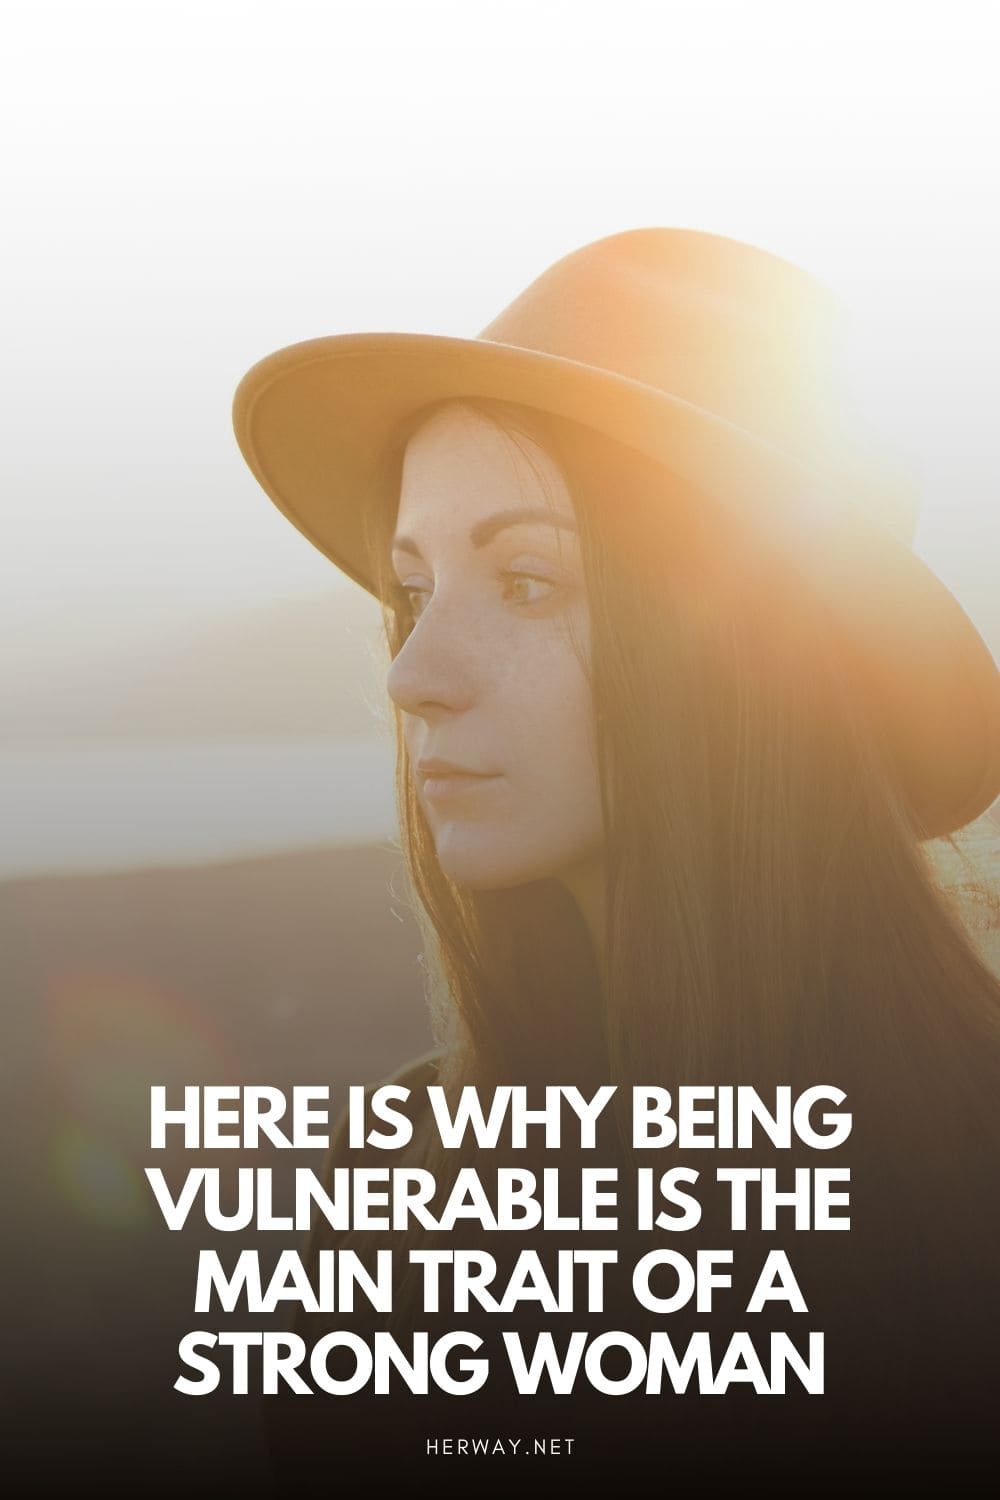 Ecco perché essere vulnerabili è la caratteristica principale di una donna forte